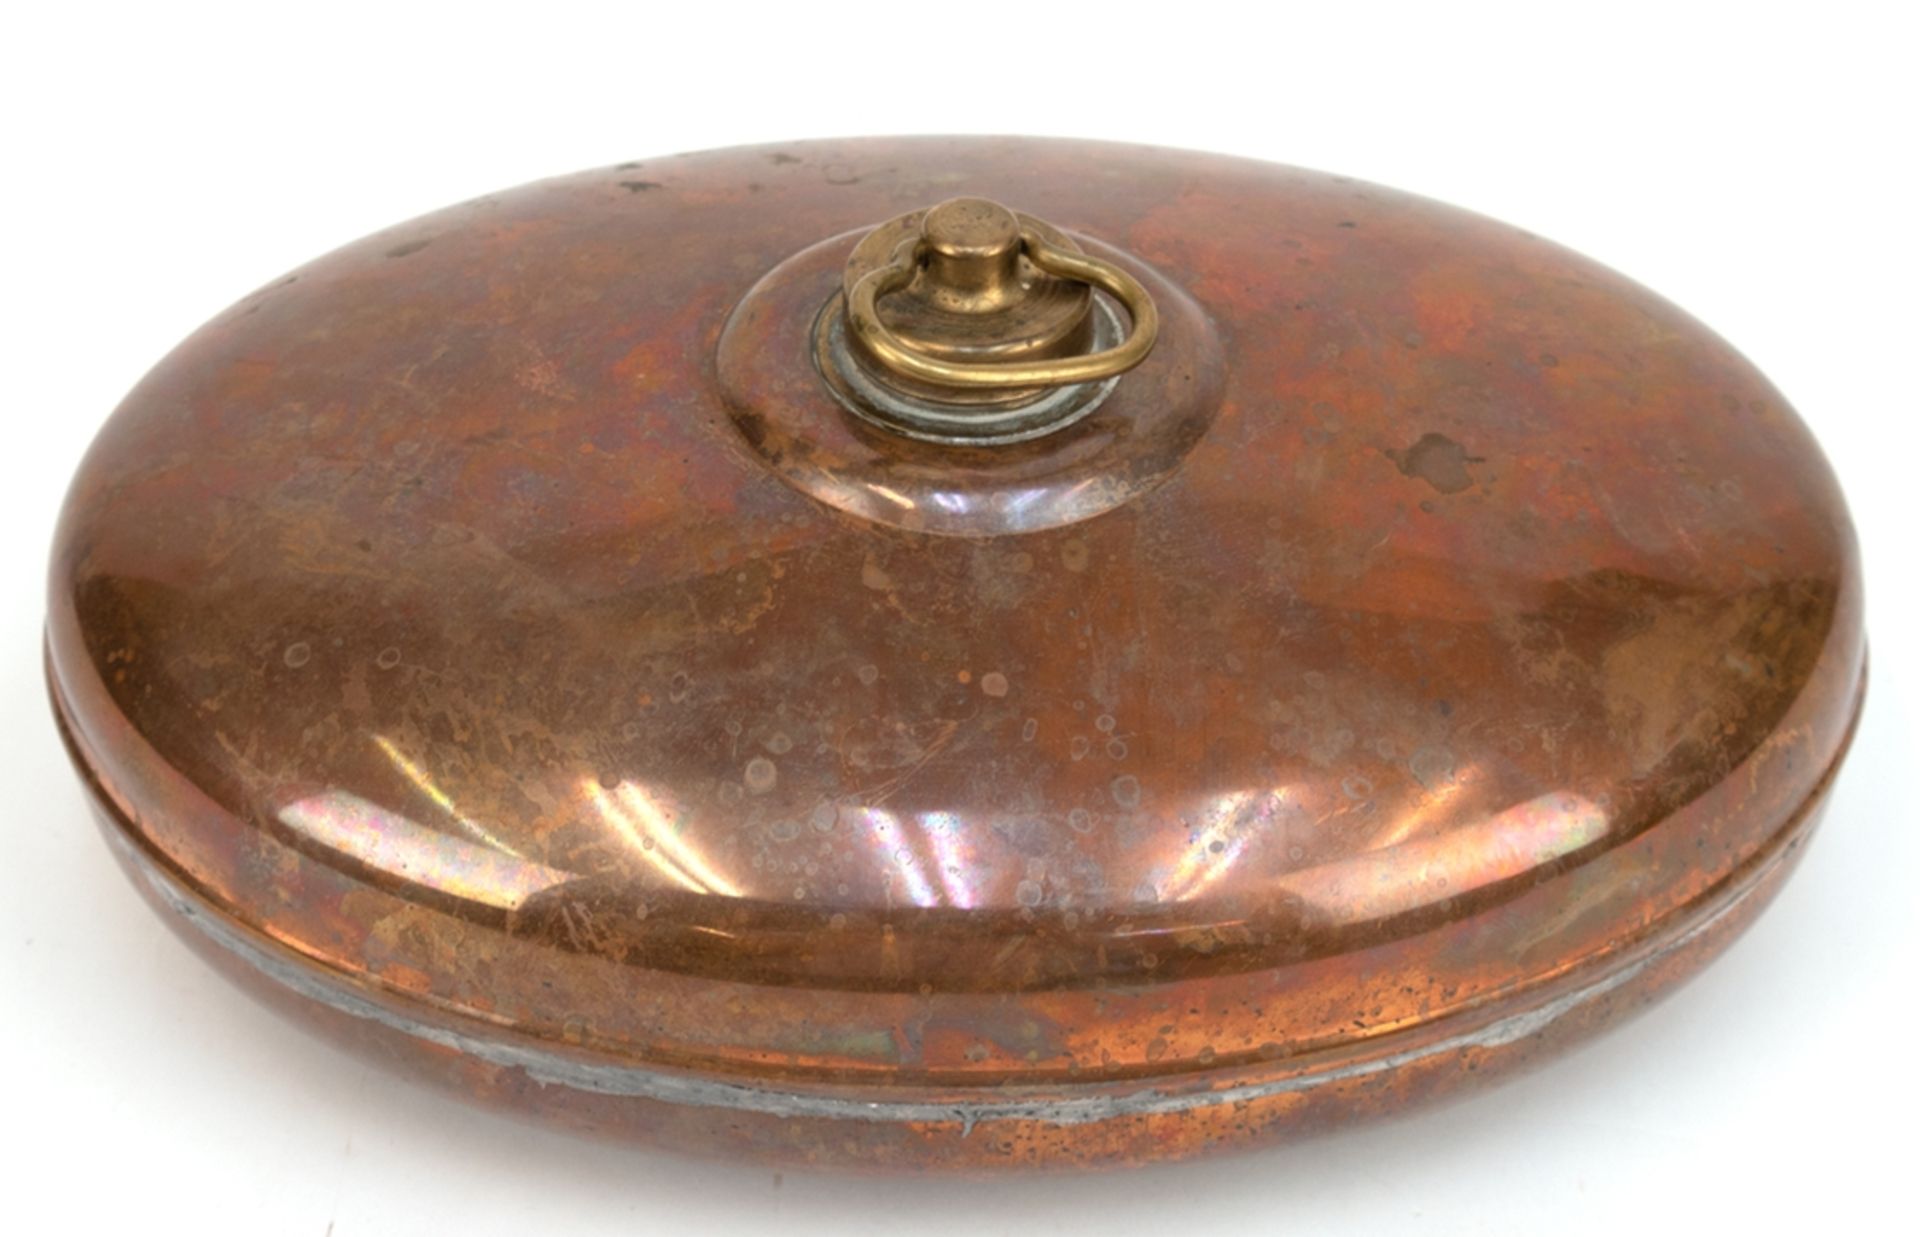 Wärmflasche, 19. Jh., Kupfer, ovoide Form mit Messingschraubverschluß, gelötet, 11,5x27x17 cm